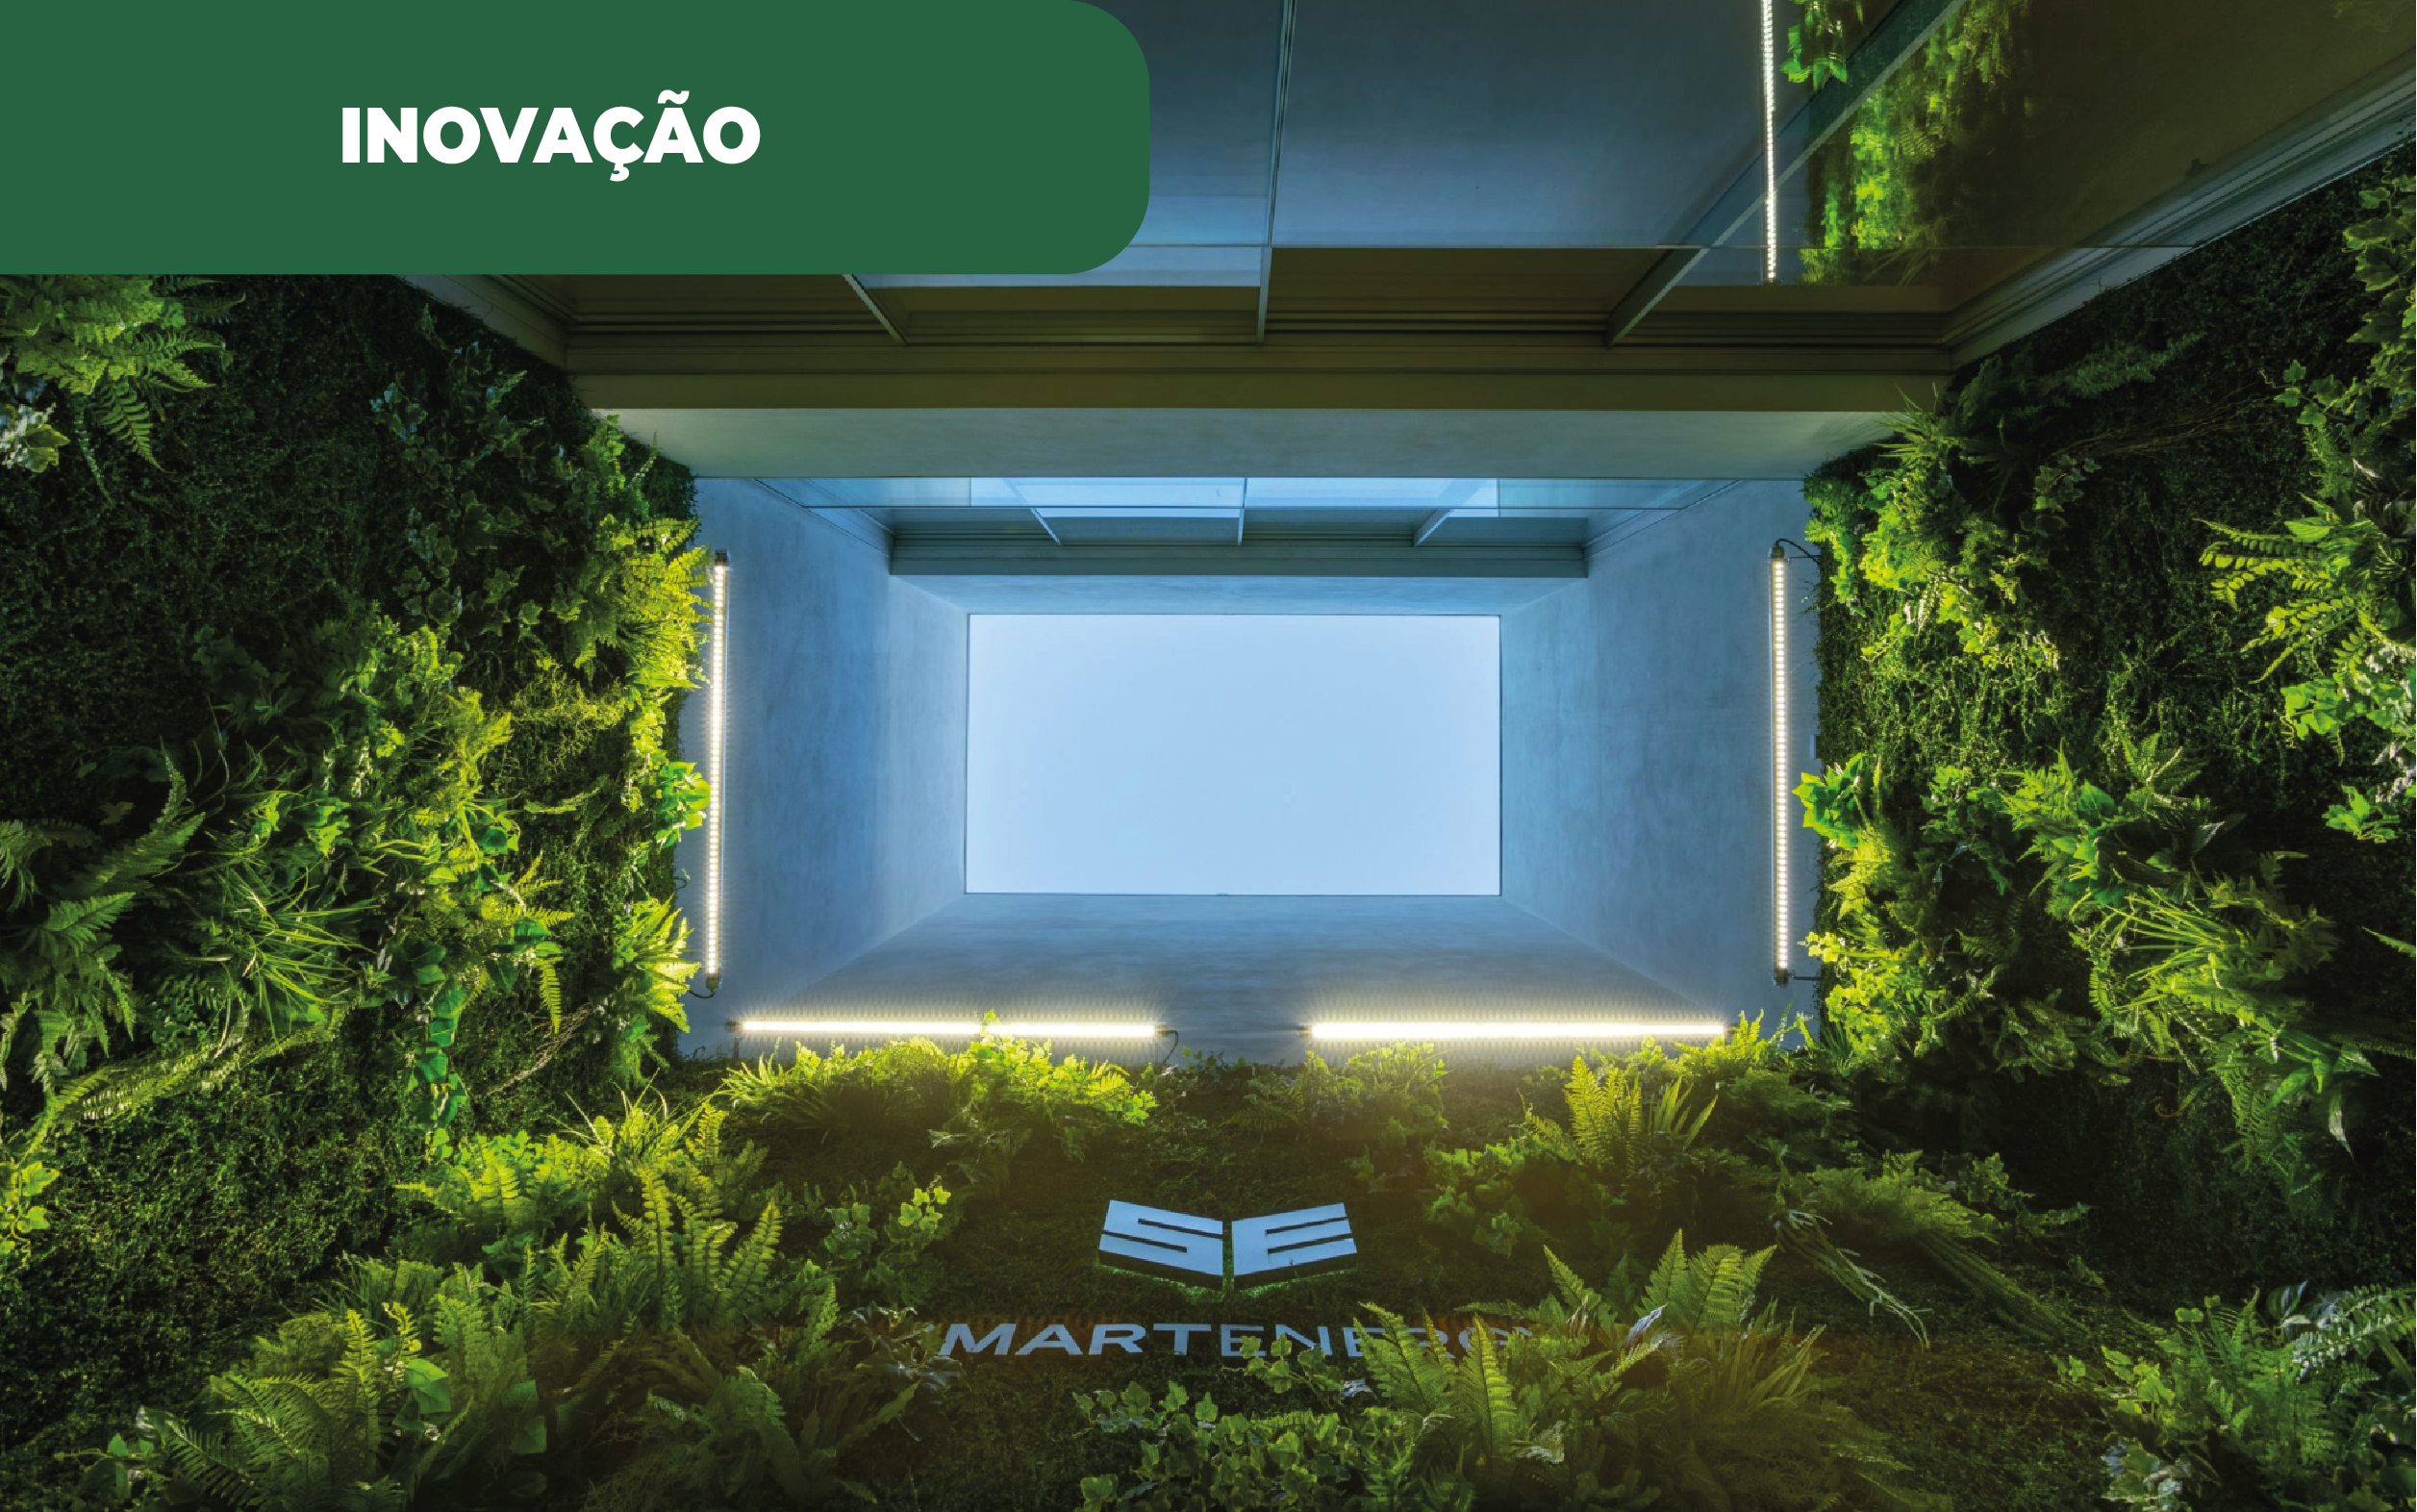 Imagem ilustrativa da empresa Smartenergy, que aposta em projetos SAF em Portugal.